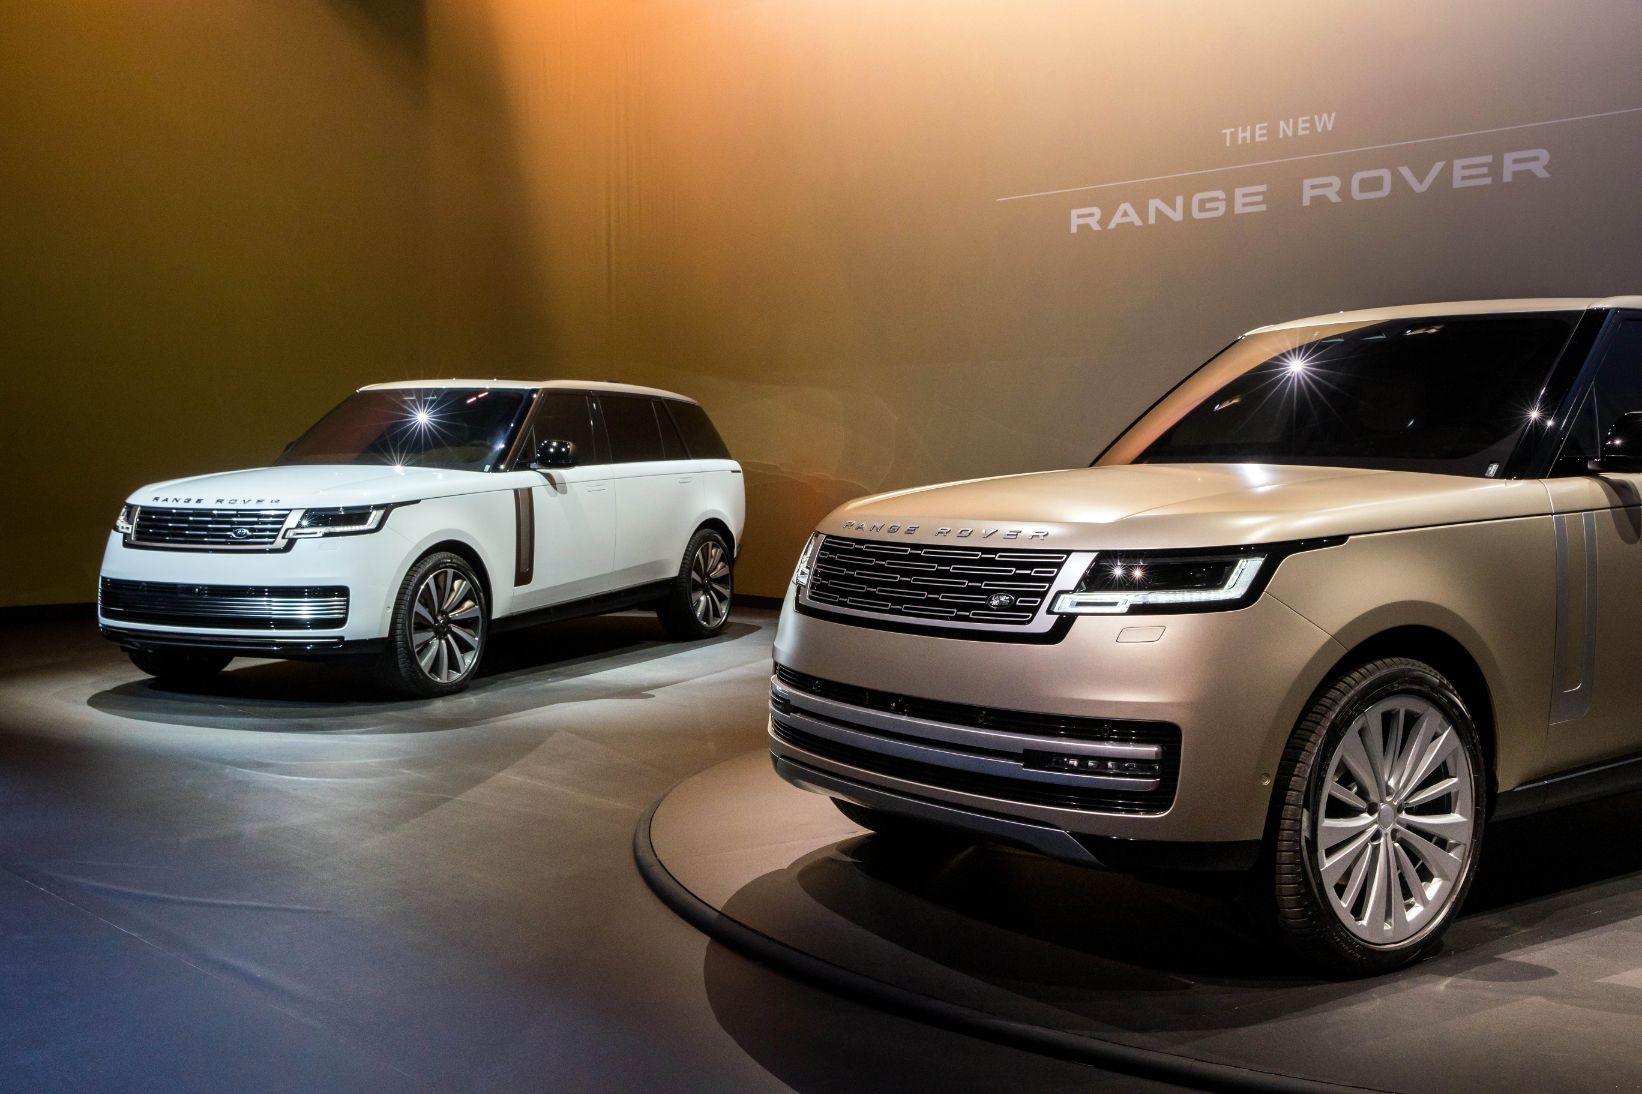 Range Rover 1 Range Rover mới ra mắt toàn cầu: Sang trọng, thiết kế đỉnh cao, giá từ 10,8 tỷ